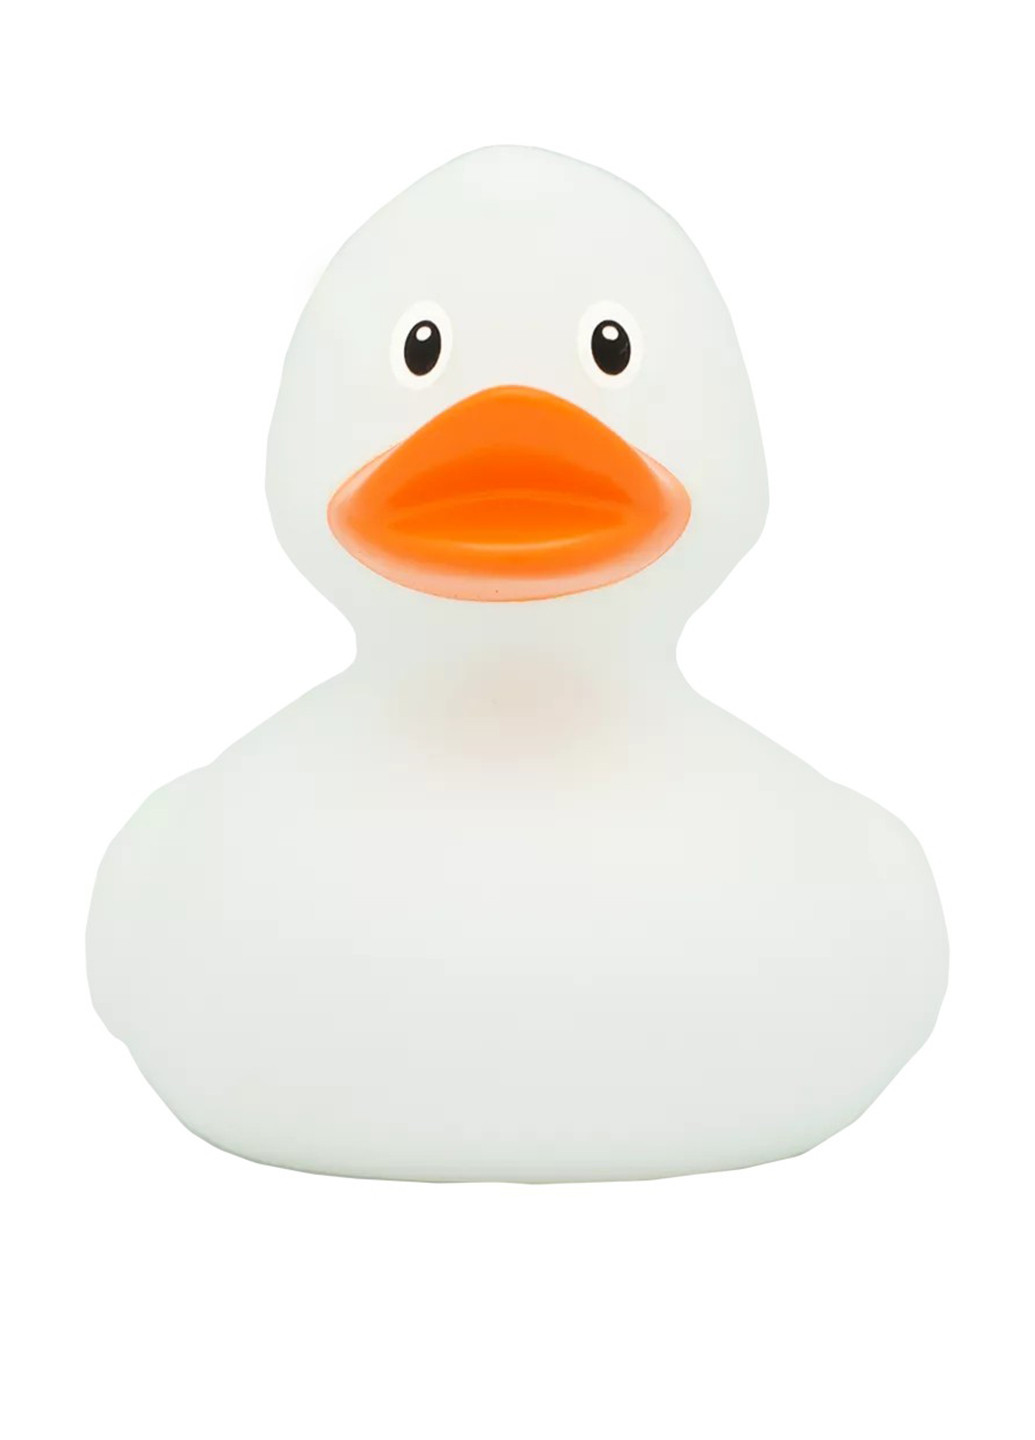 Игрушка для купания Утка, 8,5x8,5x7,5 см Funny Ducks (250618822)